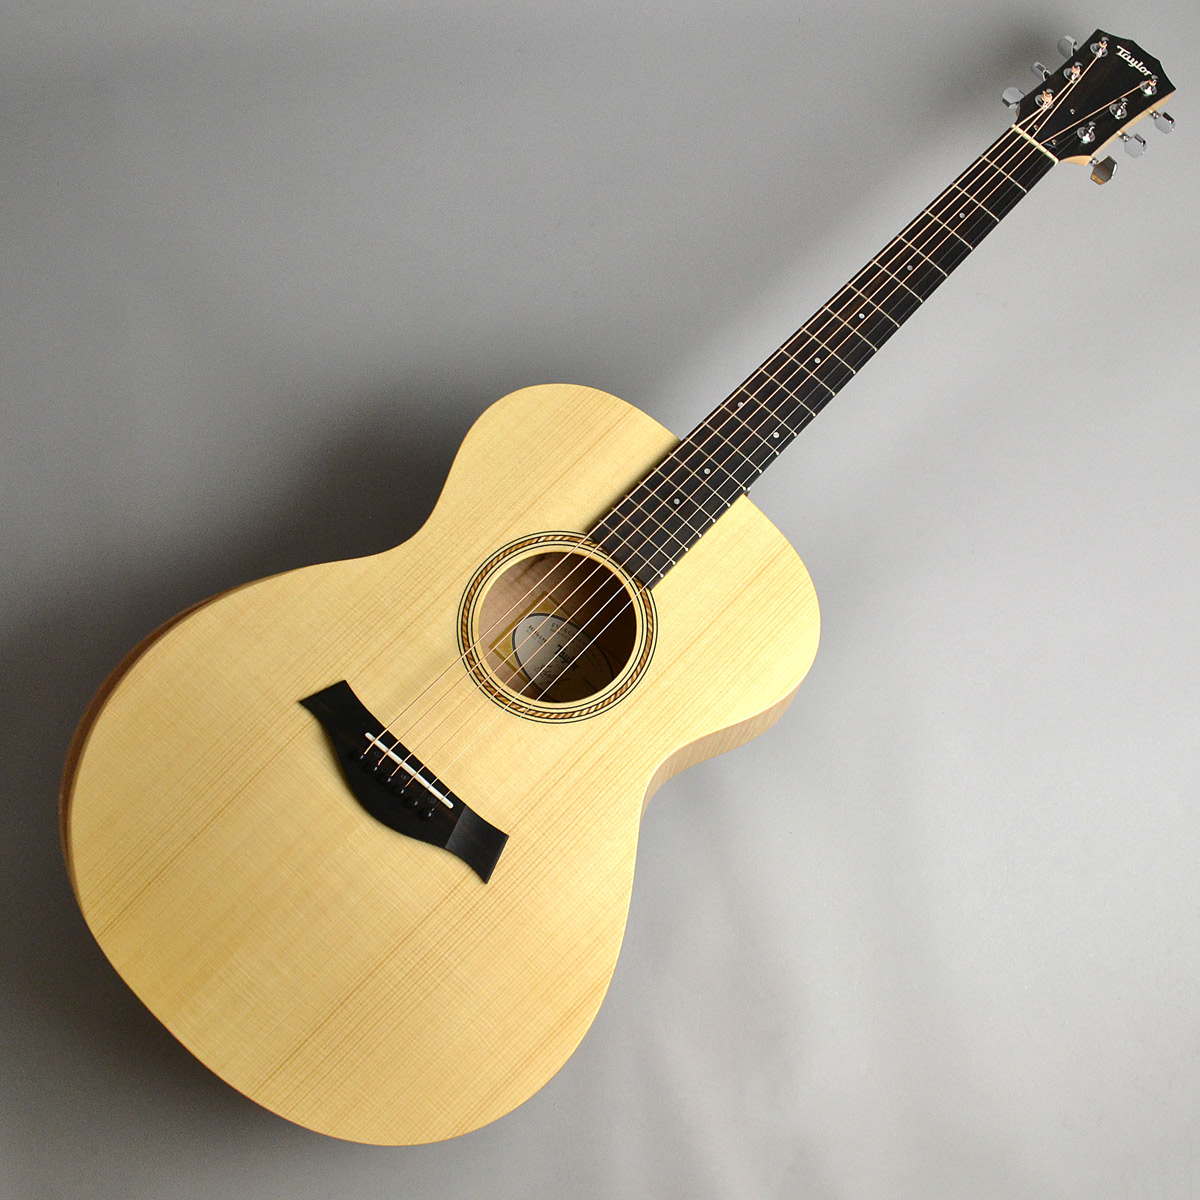 *サステナブルな木材を使用した島村楽器コラボモデル 環境保全と持続可能な開発に注力しており、アメリカでトップクラスのシェアを誇るギターブランド「Taylor Guitars」と島村楽器のコラボレーションが実現。 環境負荷の少ないエレクトリックアコースティックギター「LTD EG Academy 12 […]